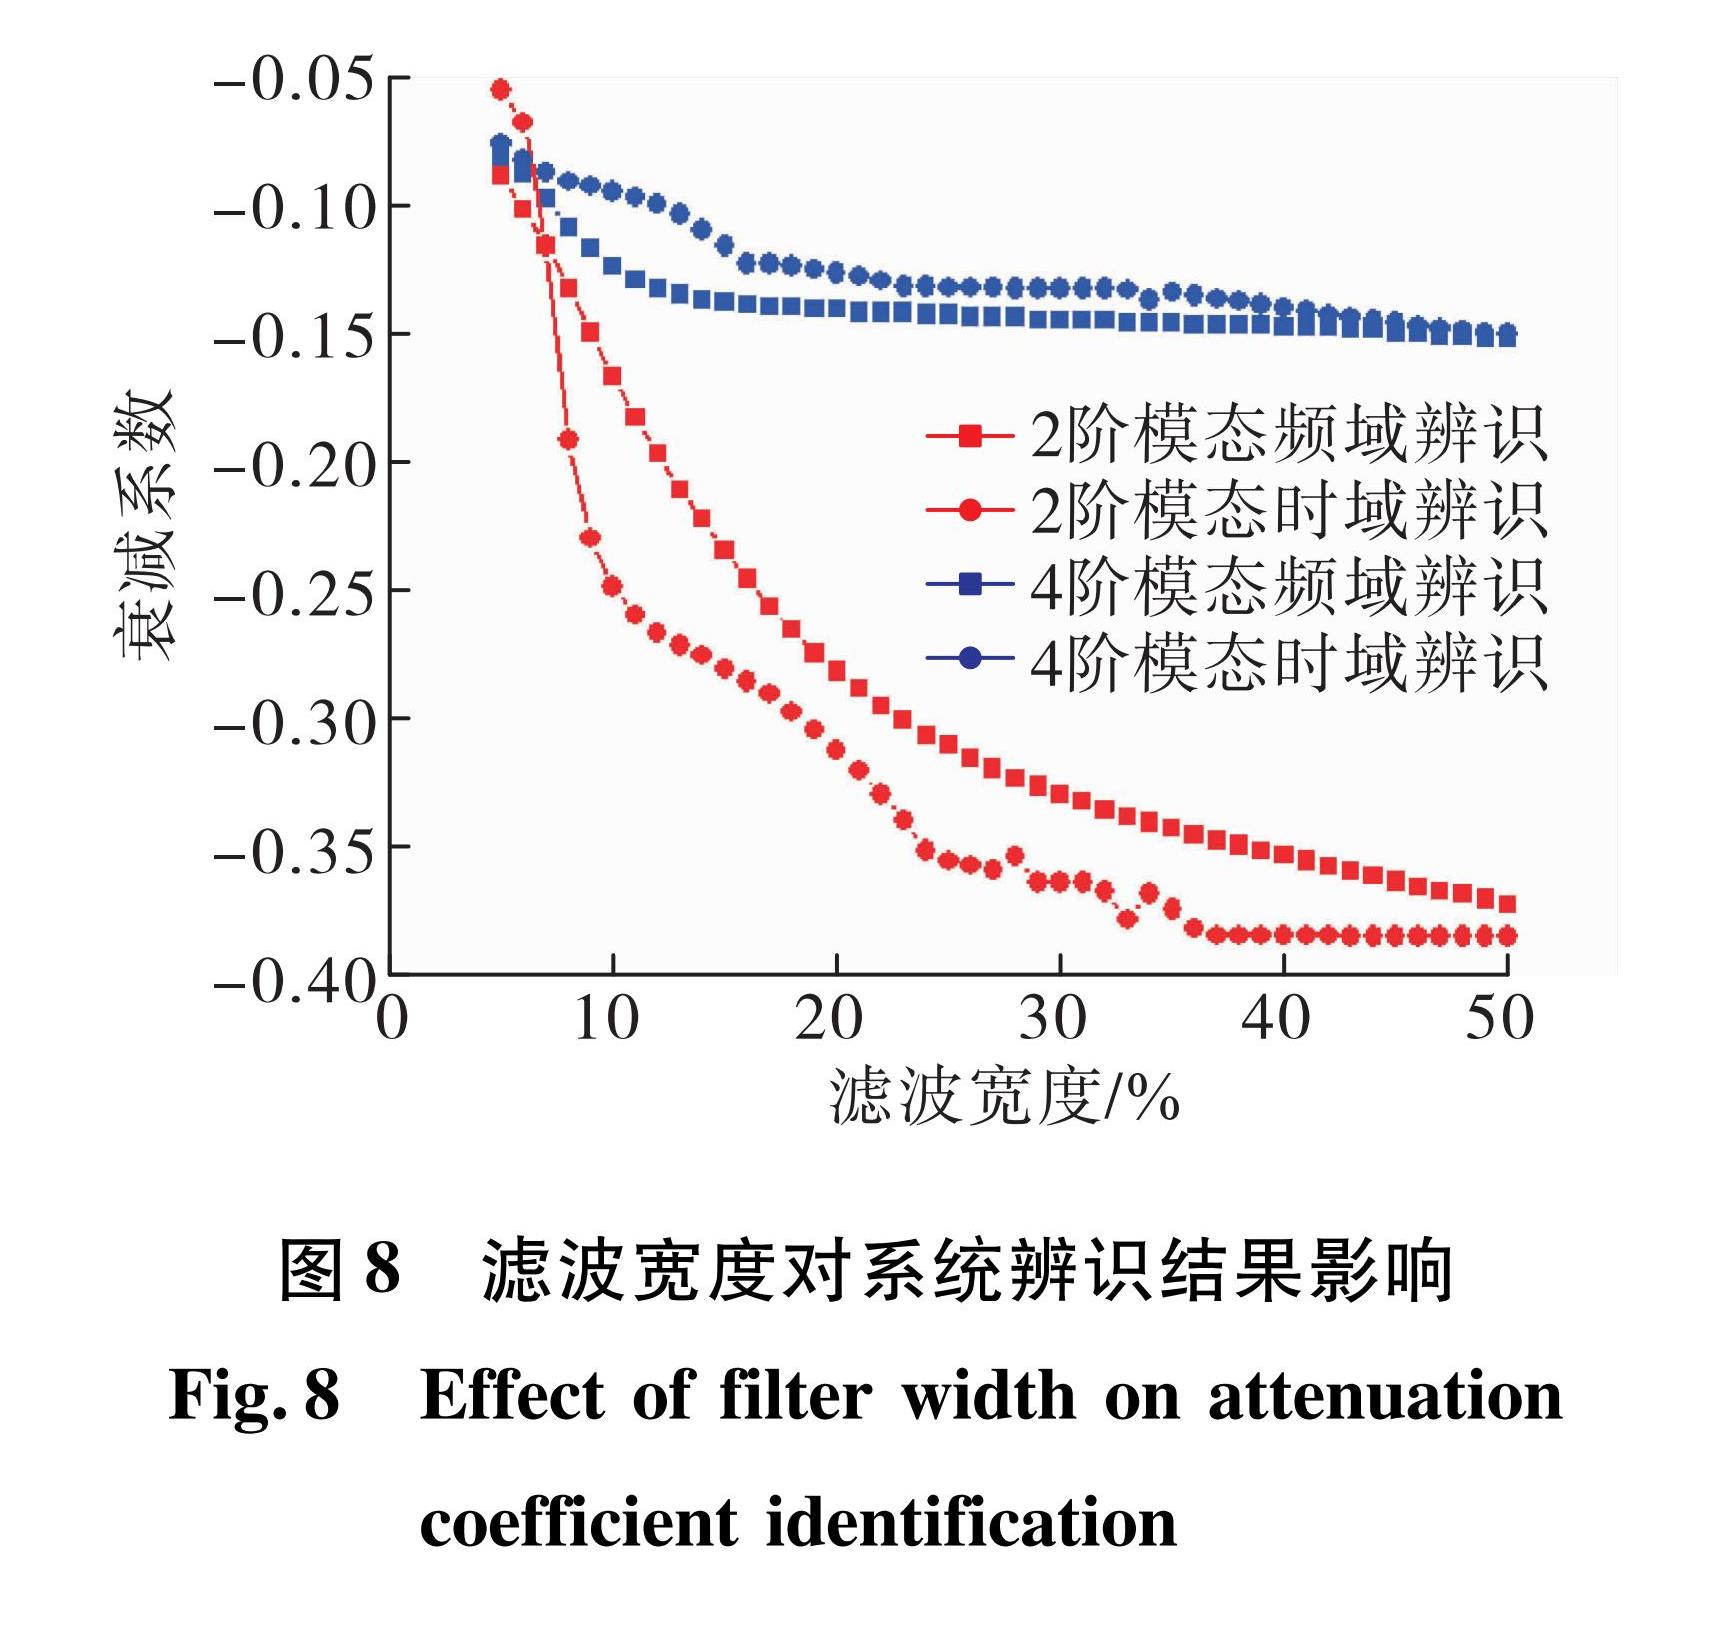 图8 滤波宽度对系统辨识结果影响<br/>Fig.8 Effect of filter width on attenuation coefficient identification